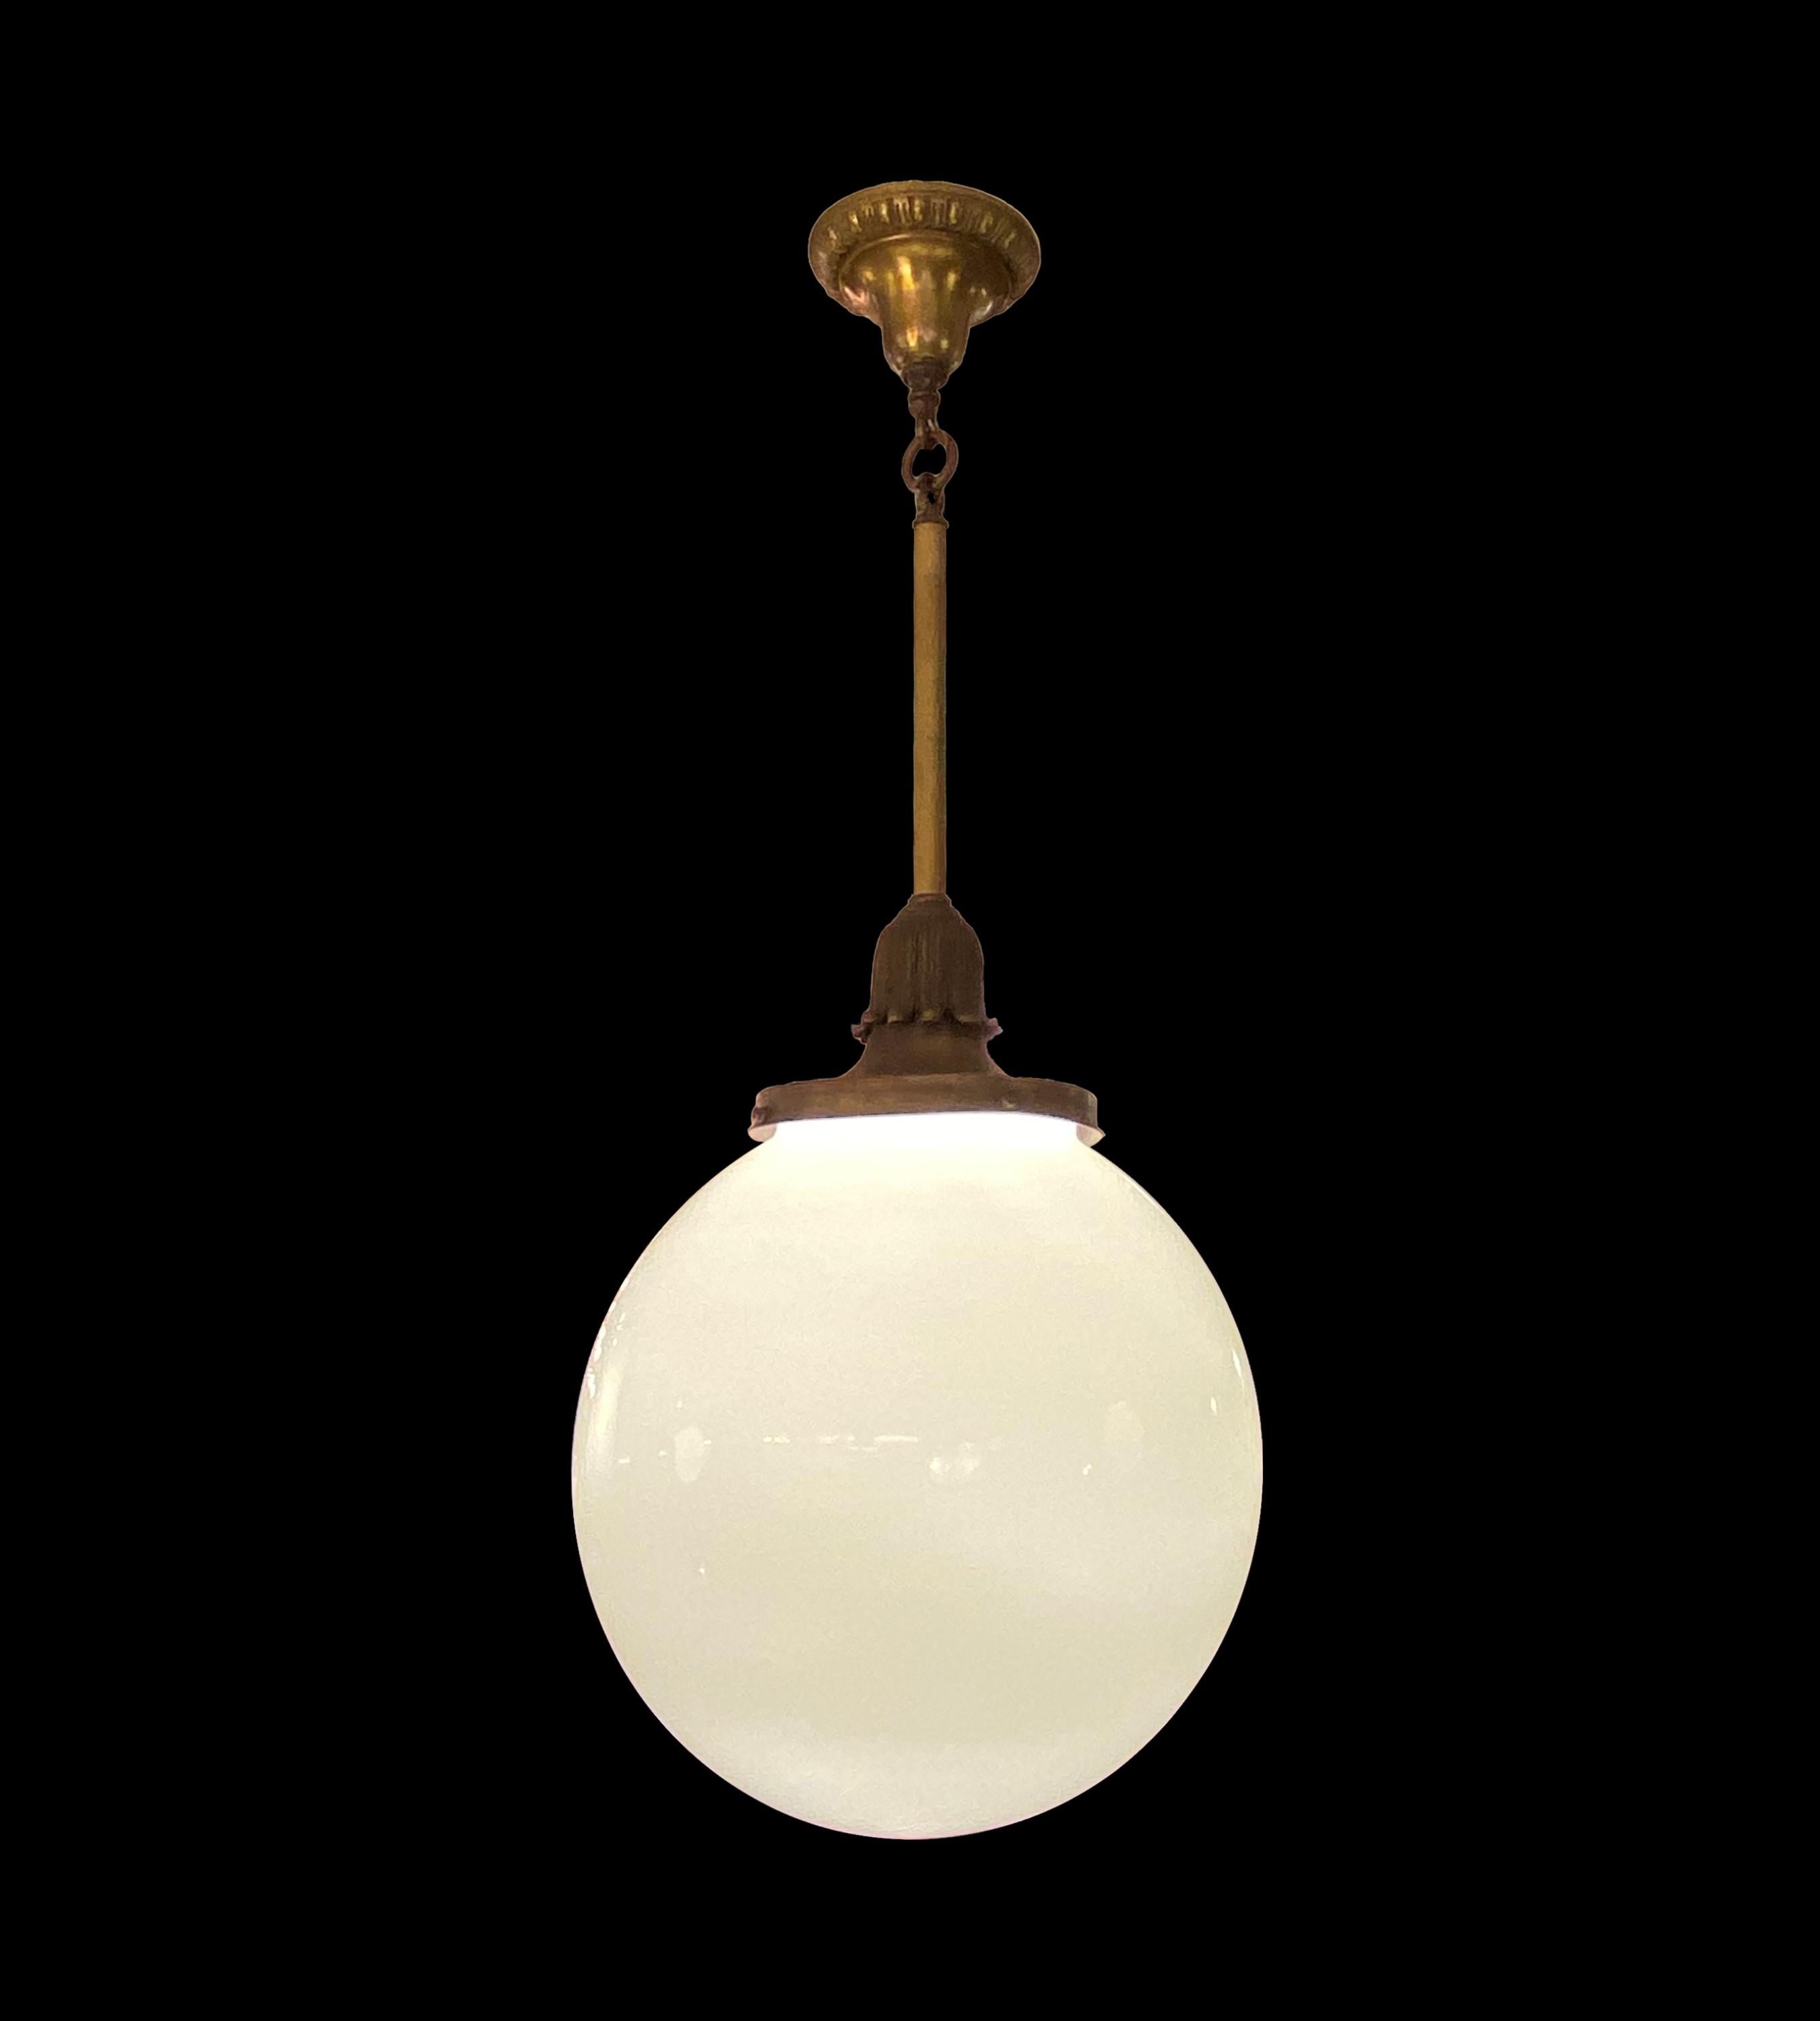 Cette lampe suspendue est un trésor antique captivant. Son globe sphérique opalin, complété par des accents ornés de laiton et de bronze, respire l'élégance, ajoutant une touche de charme intemporel à n'importe quel espace. Nettoyé et restauré.